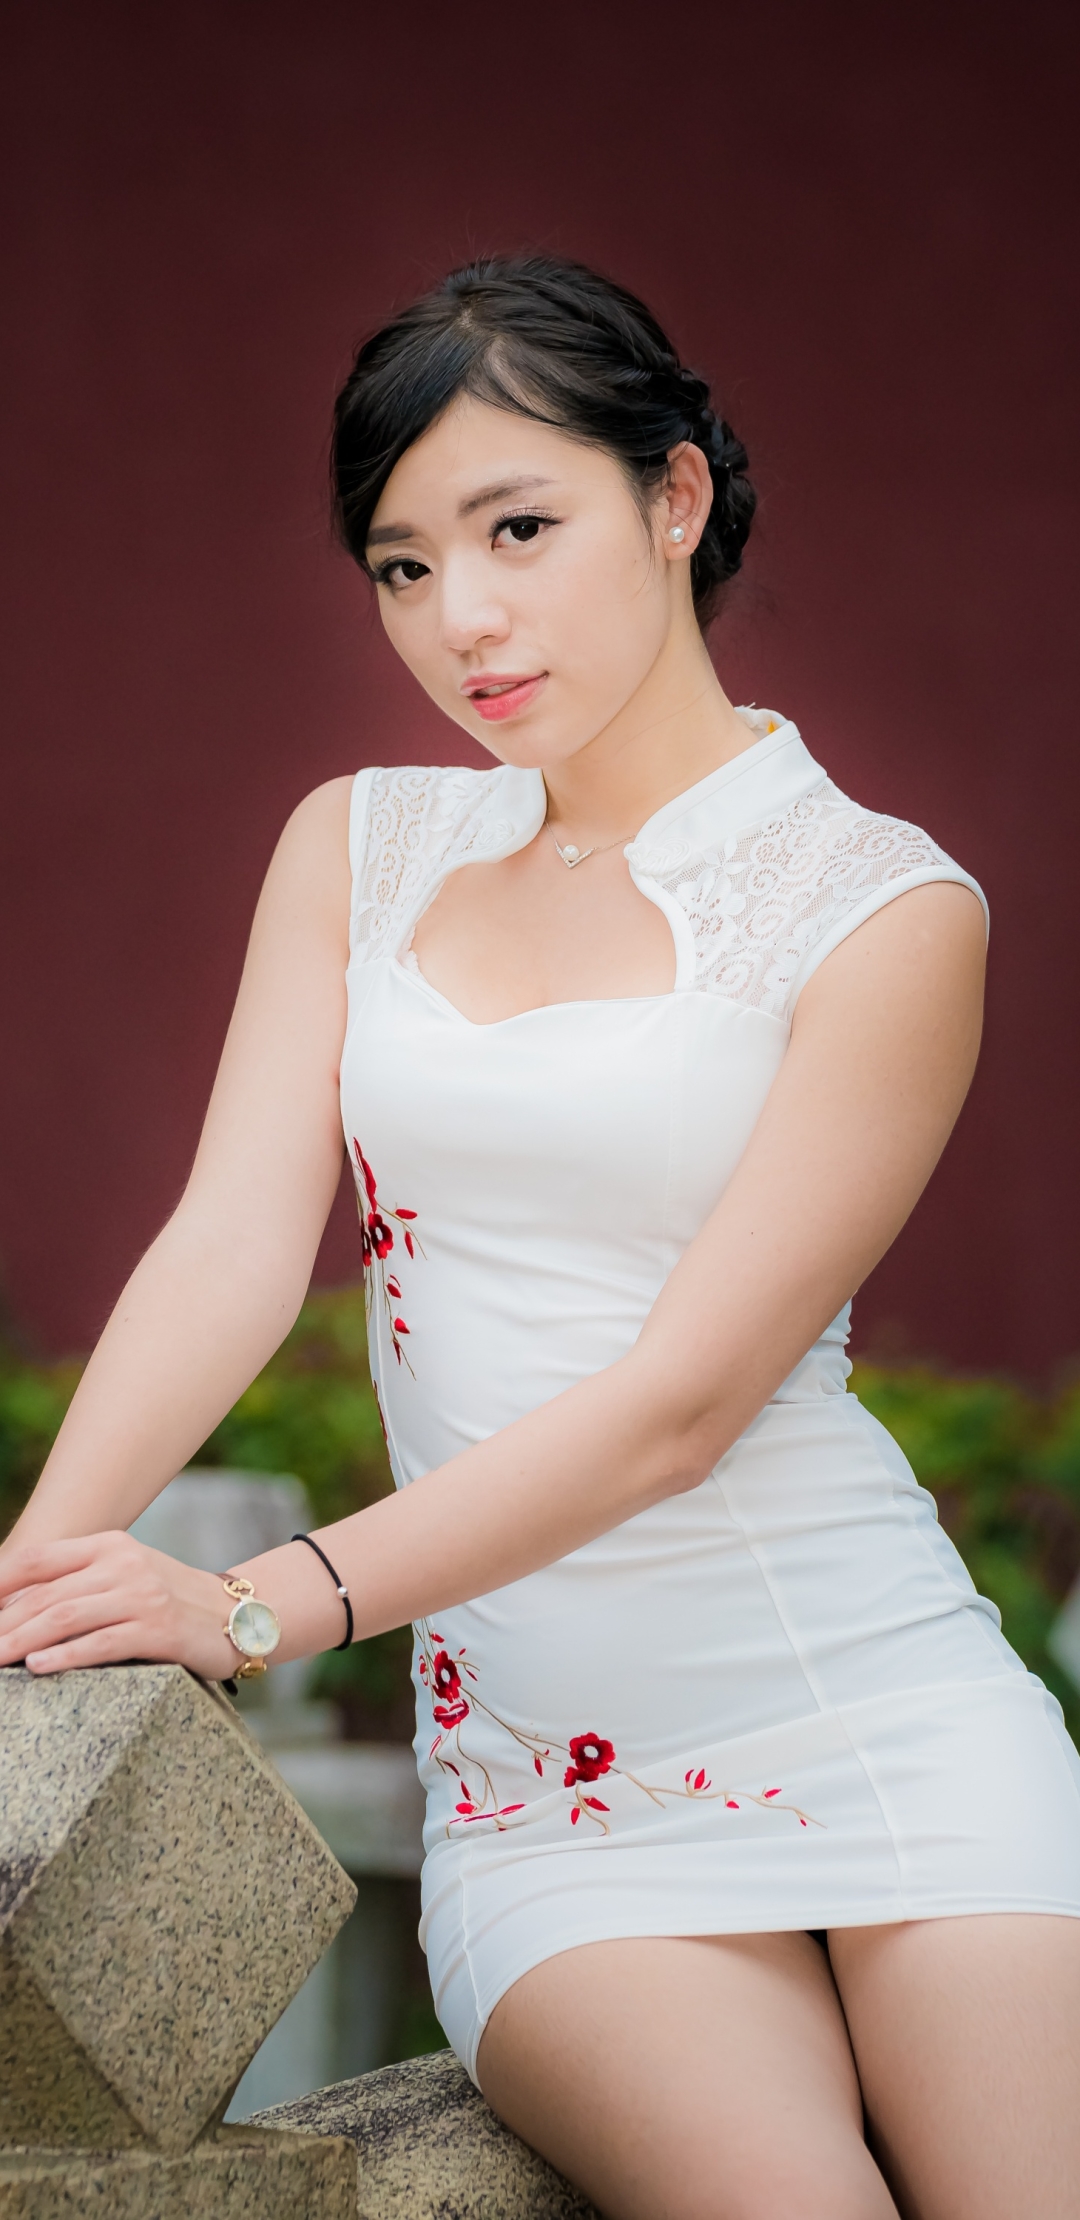 Download mobile wallpaper Model, Women, Asian, Black Hair, White Dress for free.